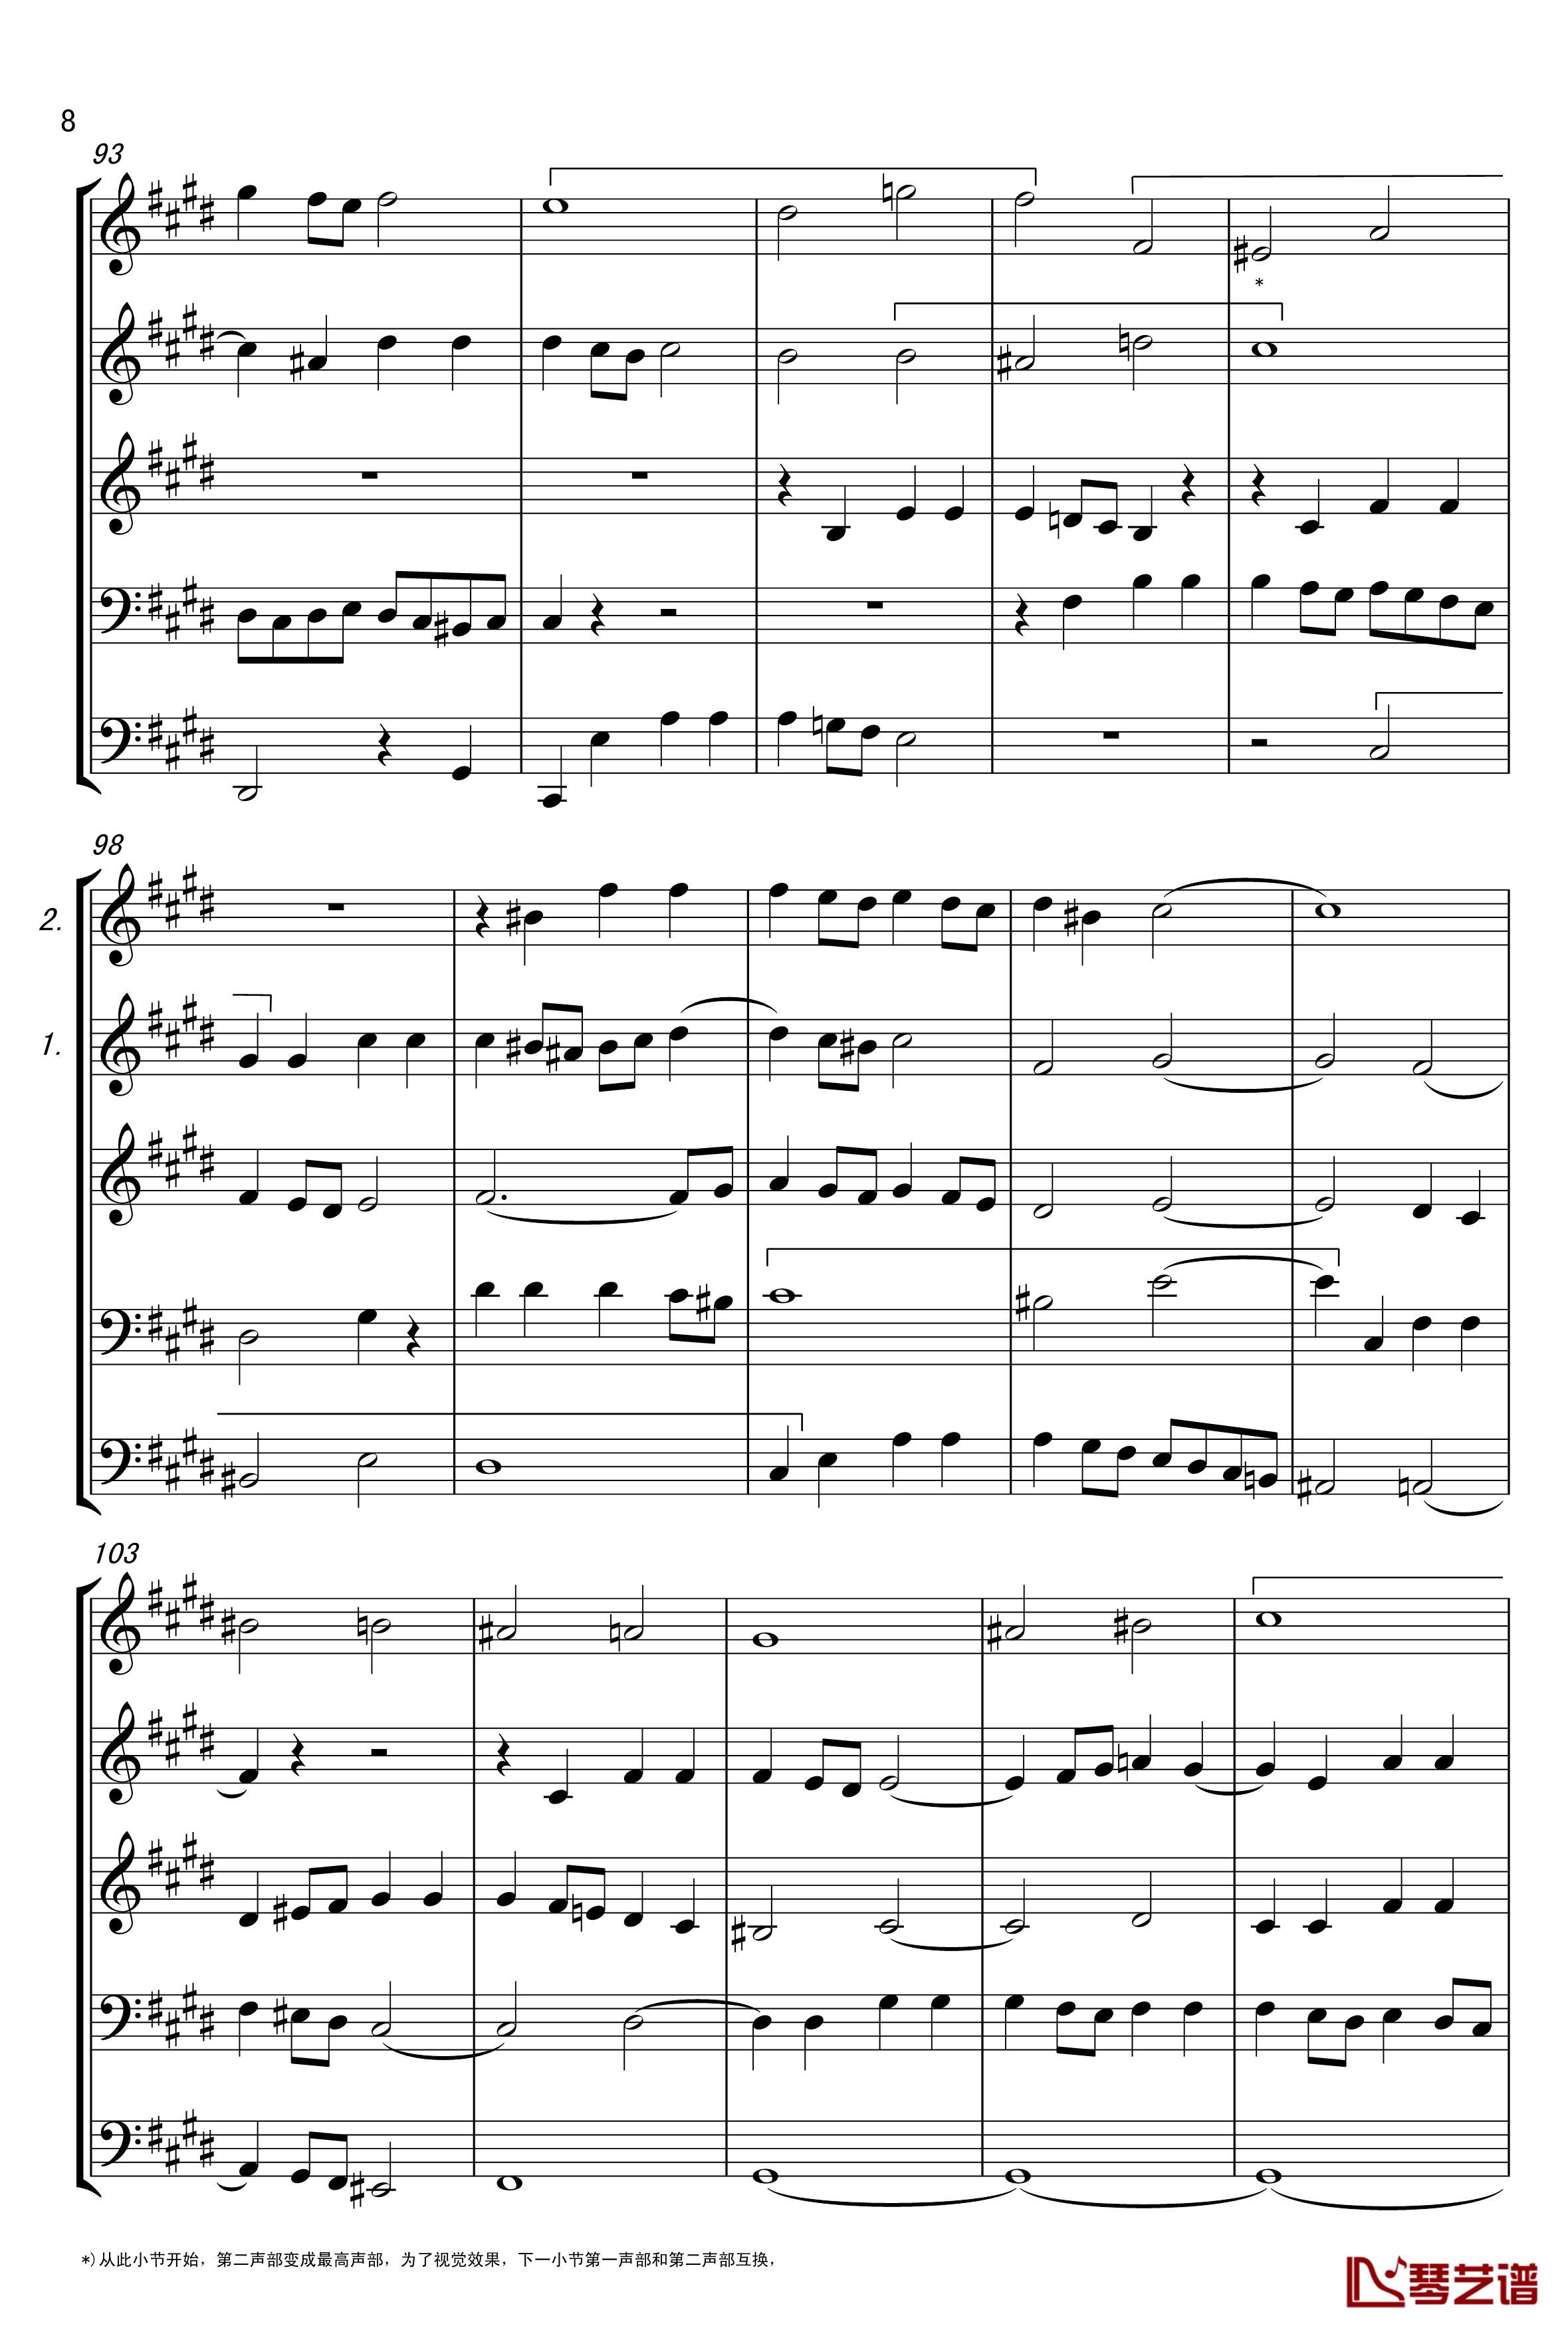 c小调赋格声部分析谱钢琴谱-选自巴赫平均律第一册-巴赫8